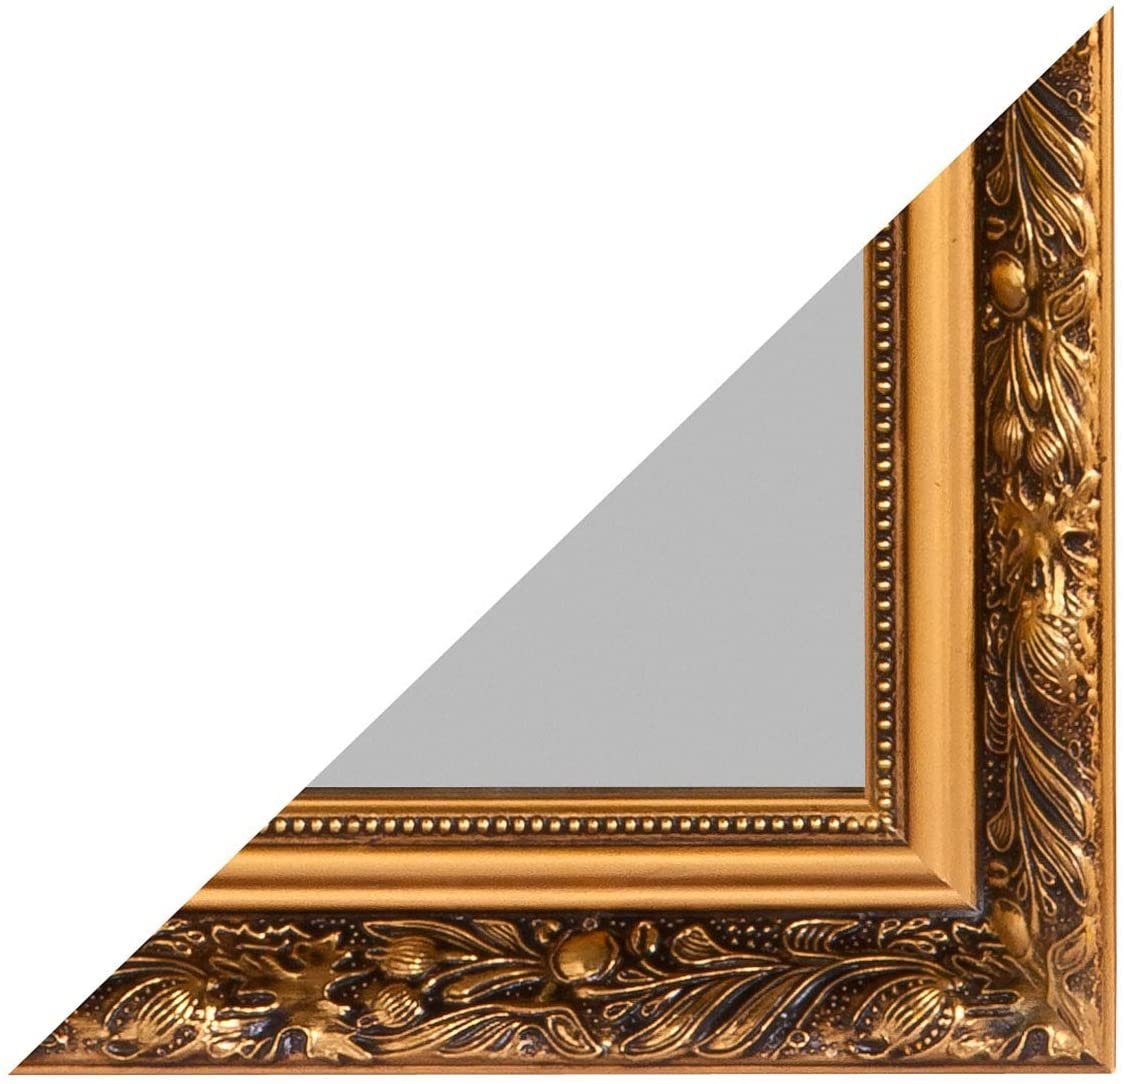 kleinen schmalen mit Ganzkörperspiegel Rahmen, und Ganzkörperspiegel Silber, 70x170 Rahmen Ganzkörperspiegel Your-Homestyle für geeignet 24 50x150 mit oder Deko-Werk Gold Holz Flur.